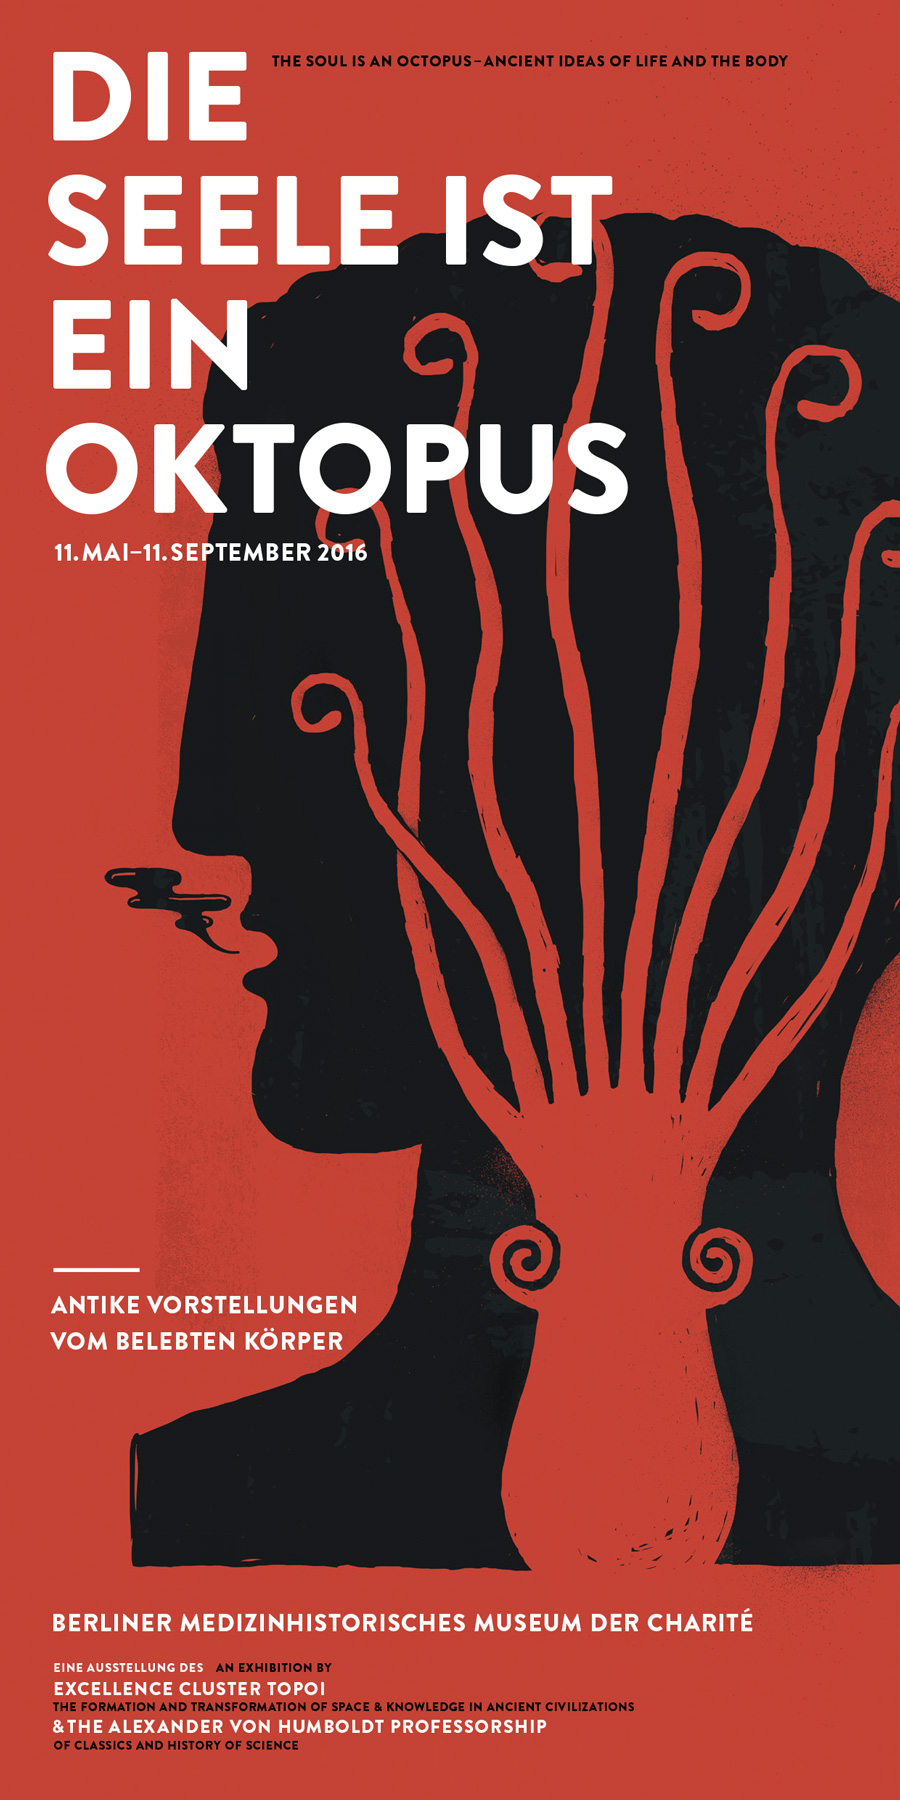 Die Seele ist ein Oktopus: Zeichnung von Christoph Geiger | Kopf mit Oktopus